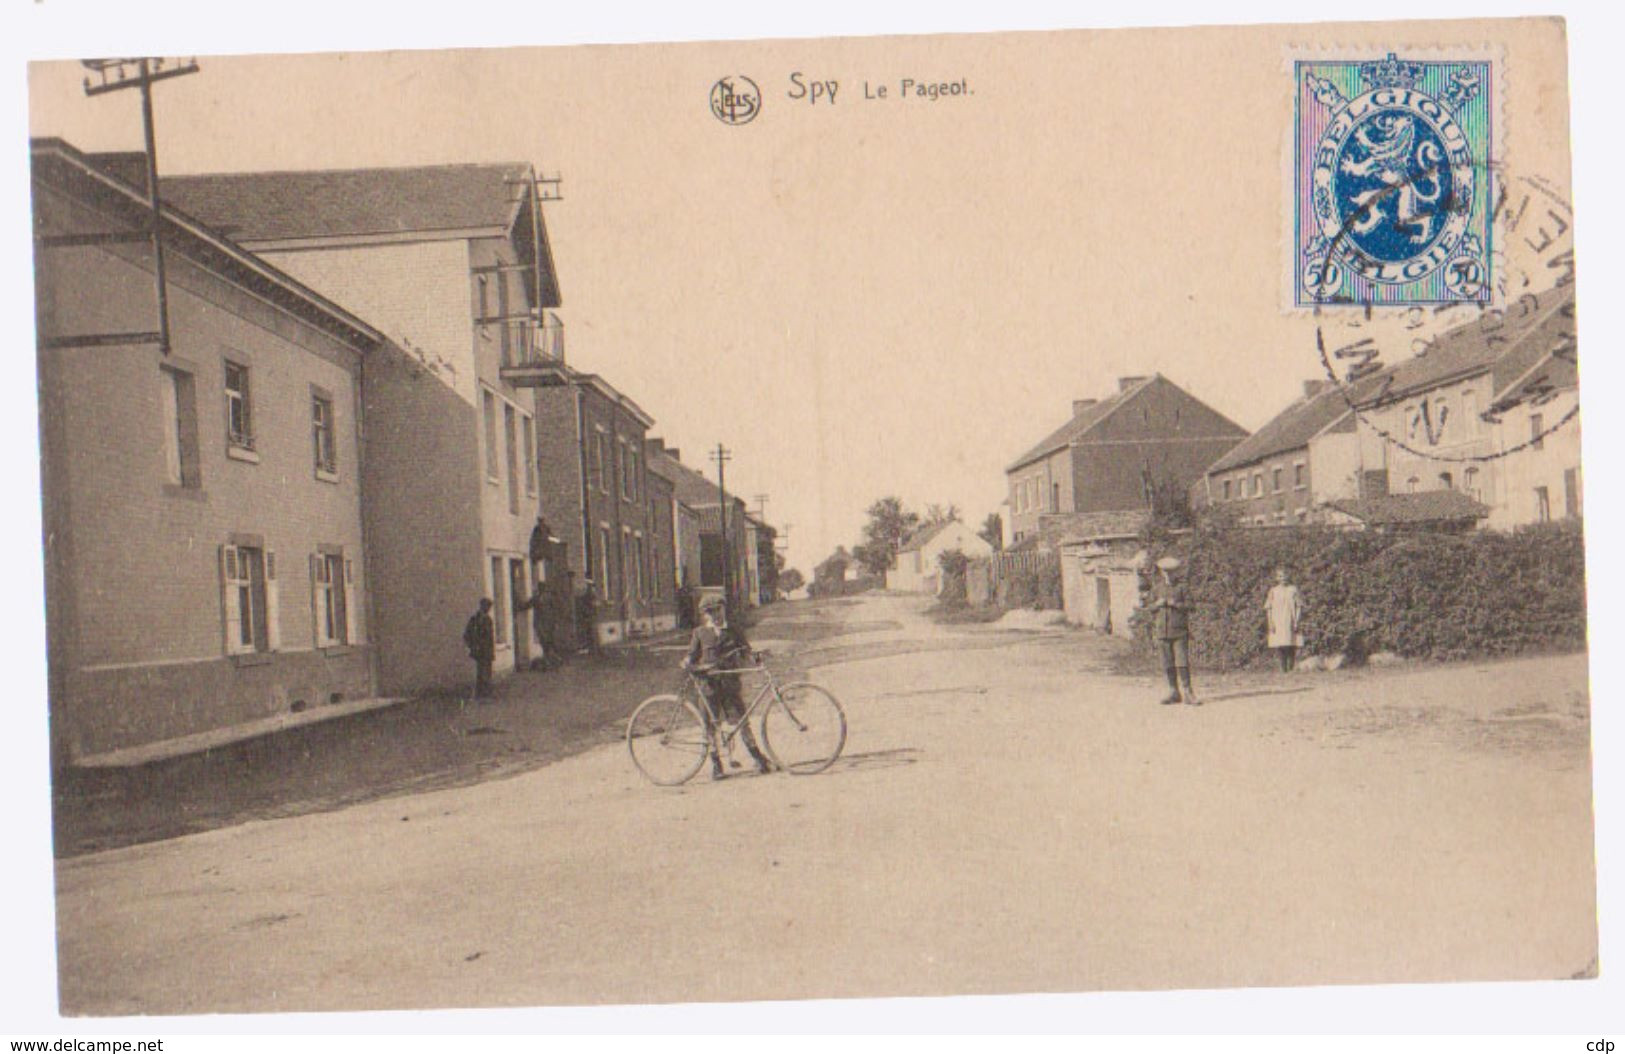 Cpa Spy Pageot  1932 - Jemeppe-sur-Sambre